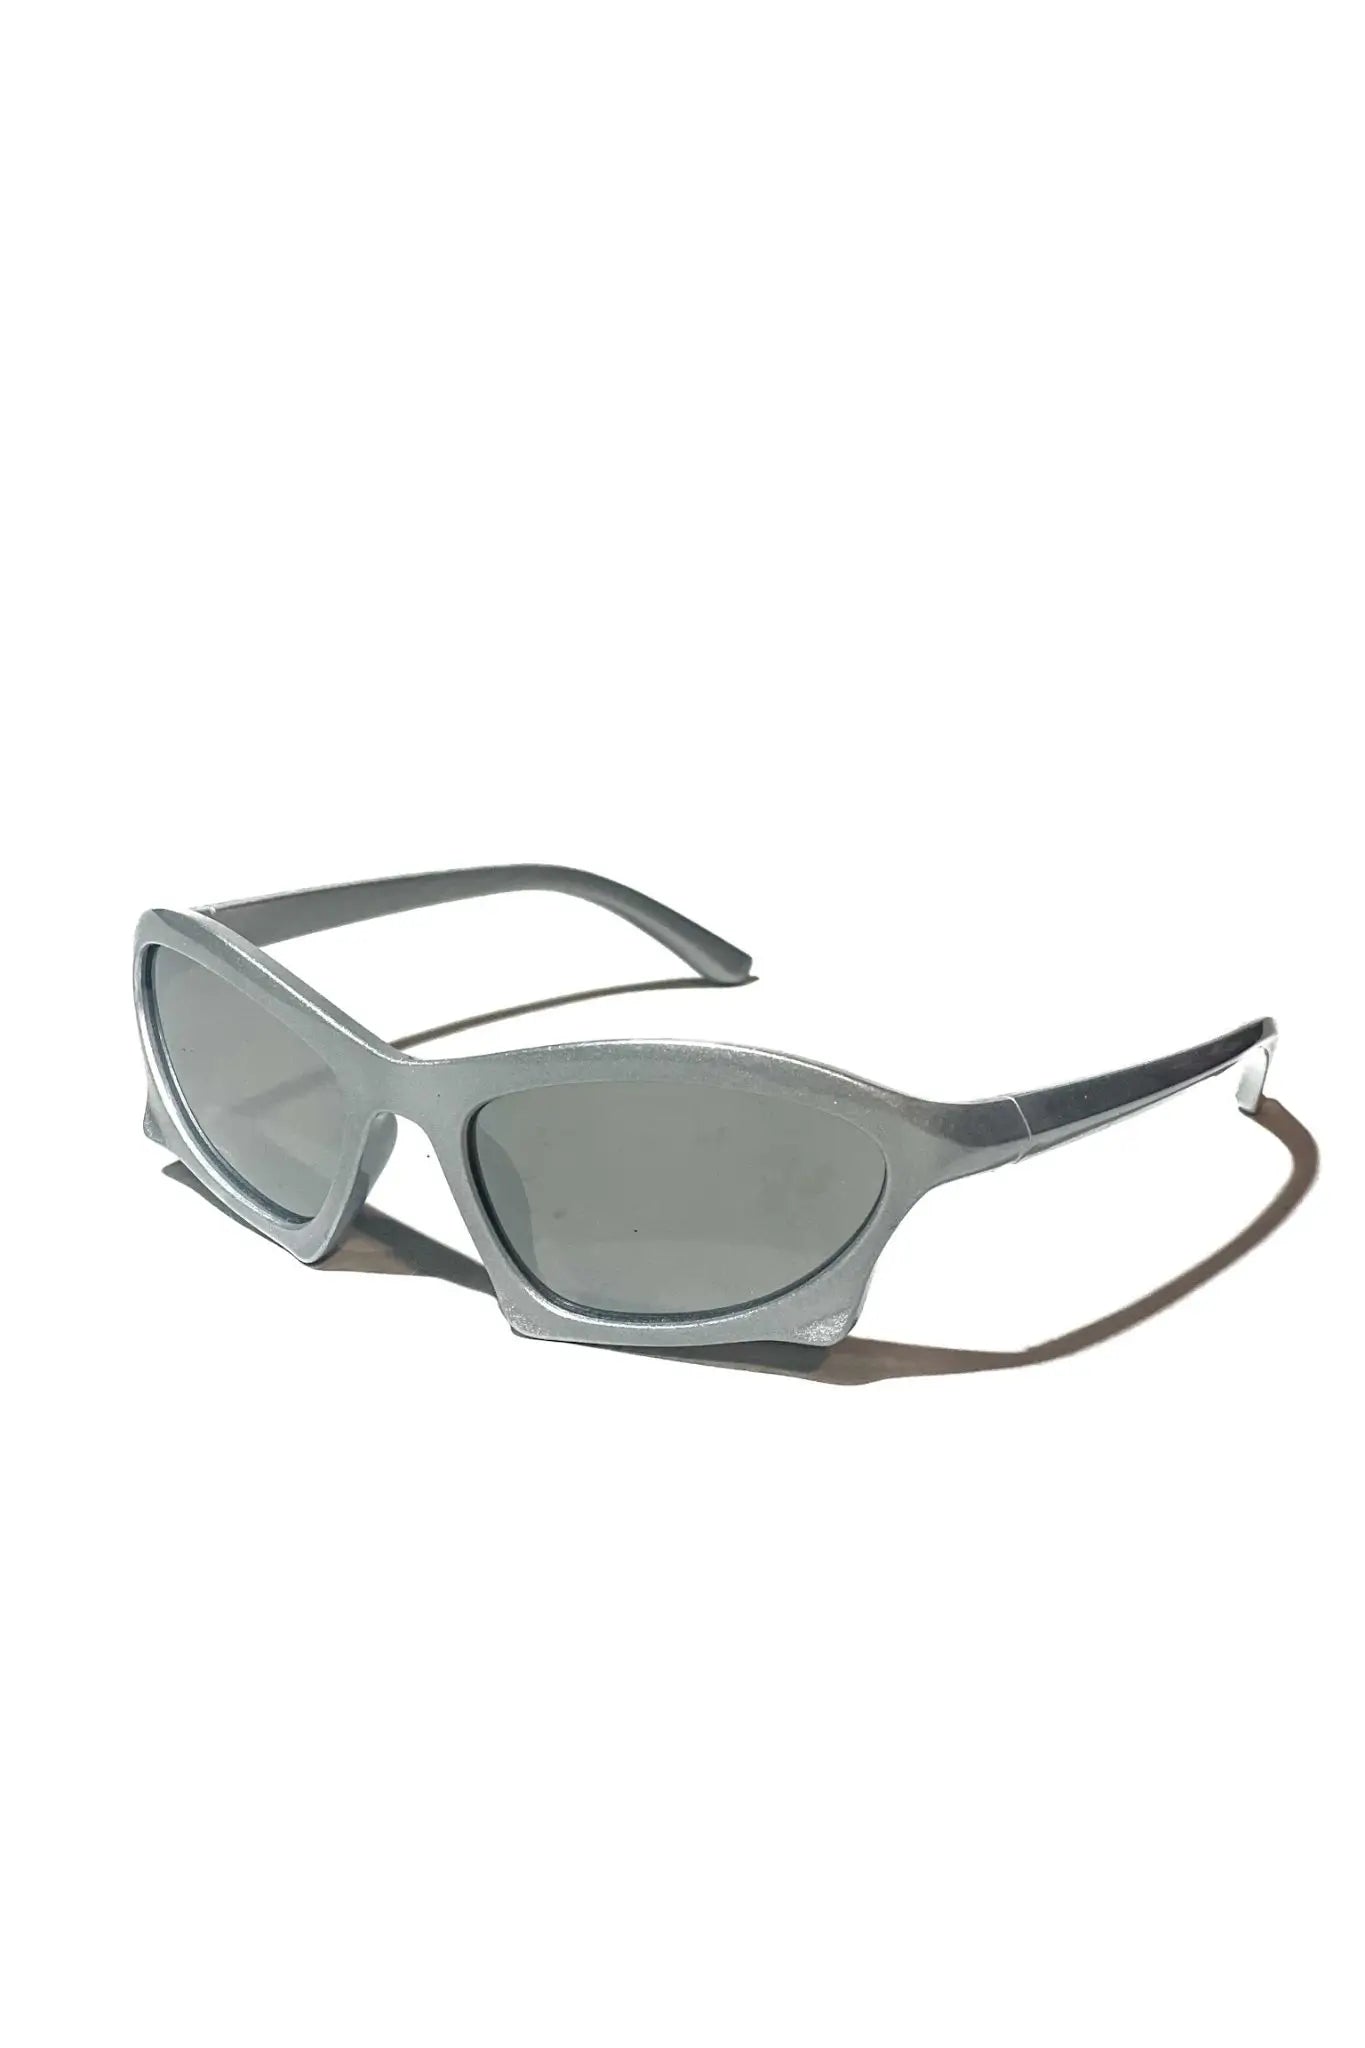 Techno Rave Futura Frame Shades: Silbrige Sonnenbrille solo